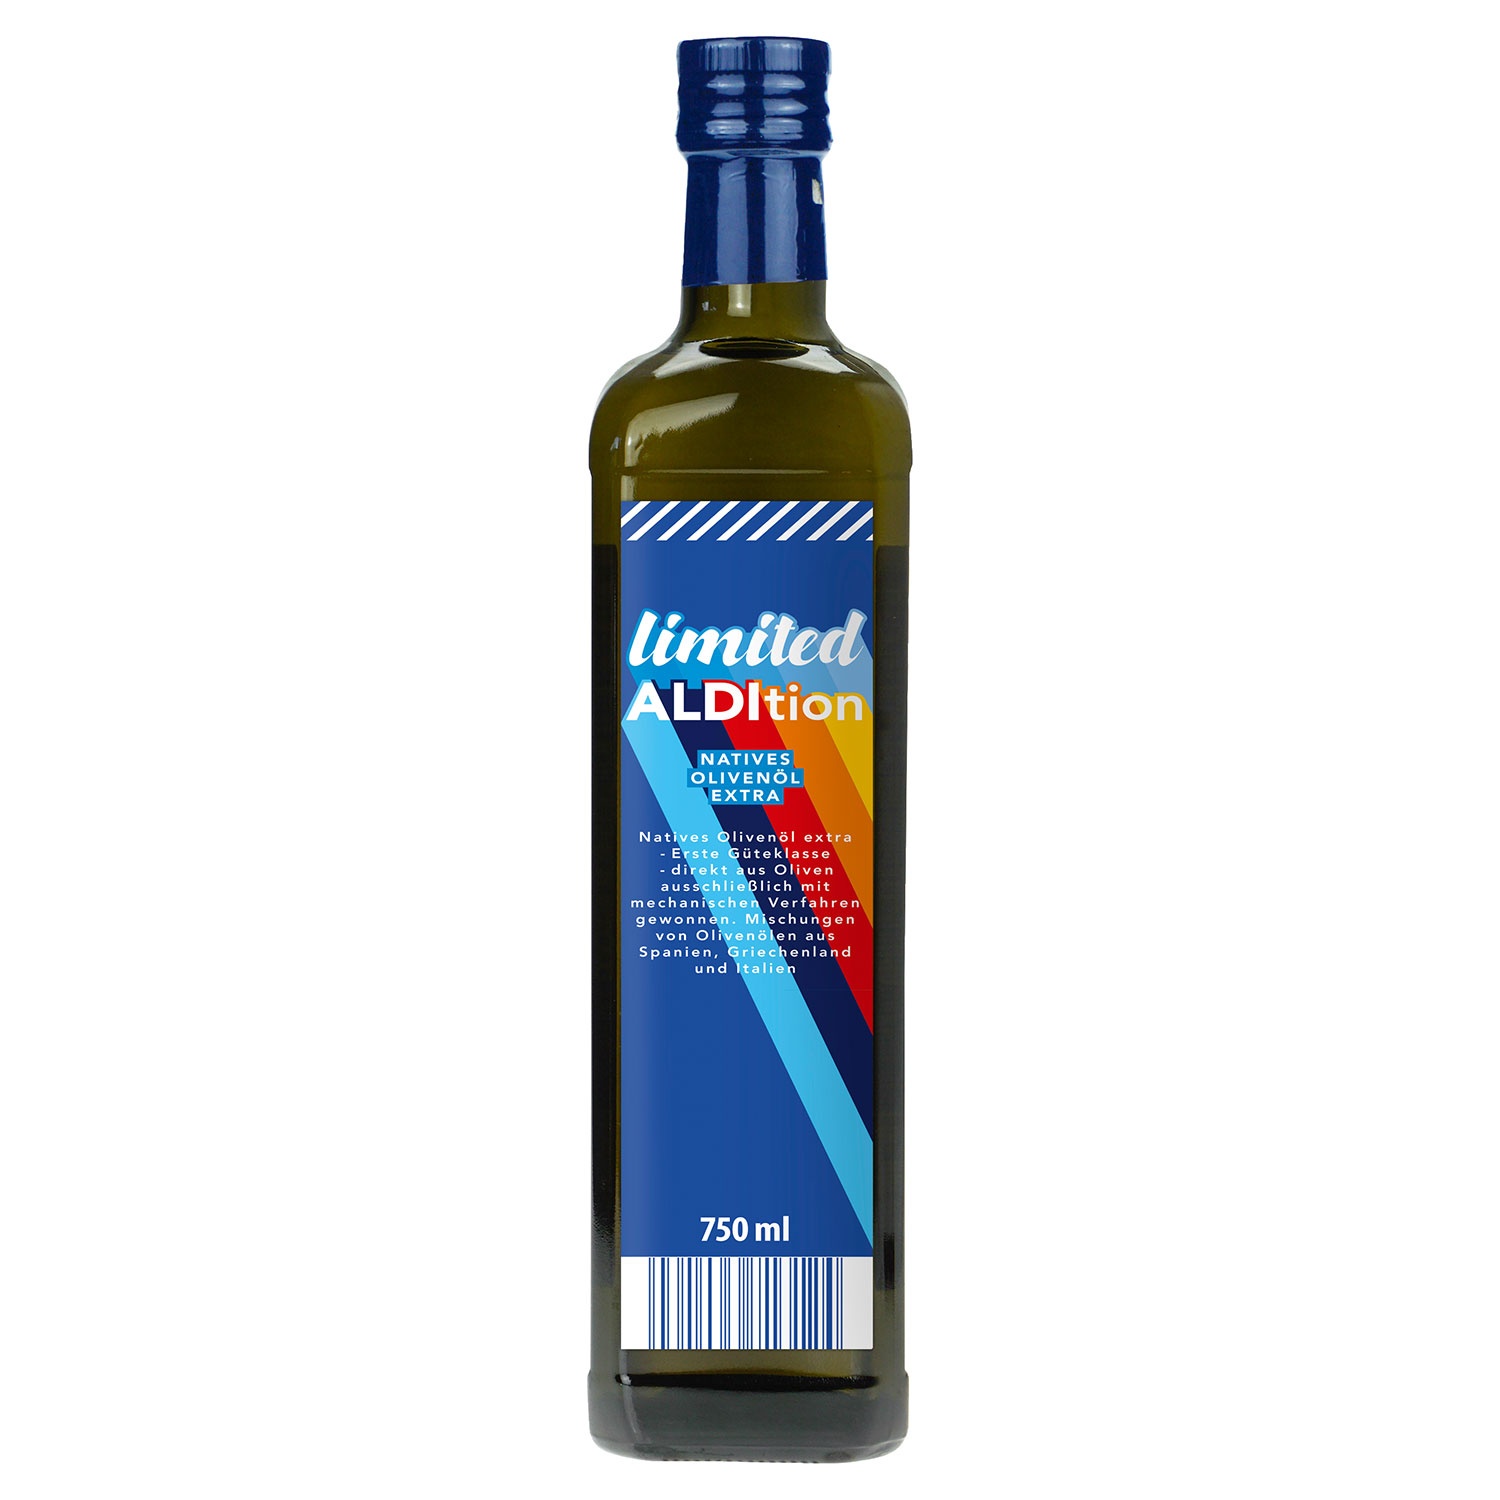 LIMITED ALDITION Natives Olivenöl extra 750 ml